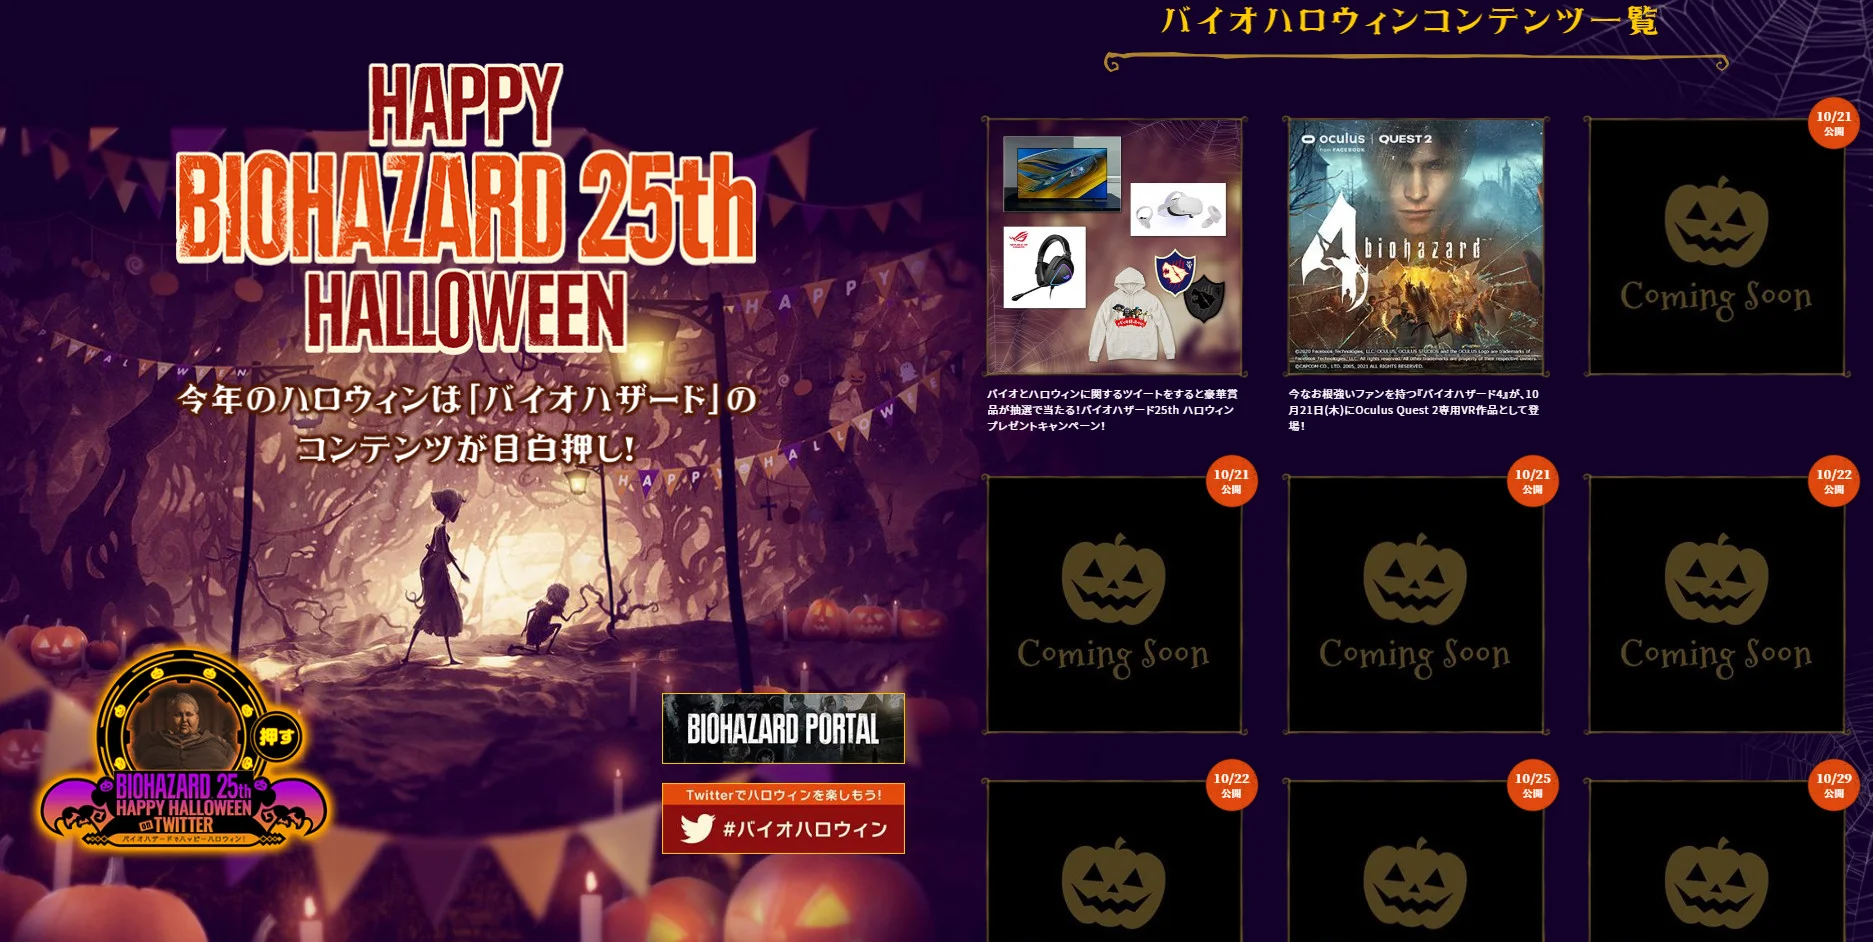 На сайте Capcom празднуют Хеллоуин и тизерят скорые анонсы по Resident Evil - фото 1